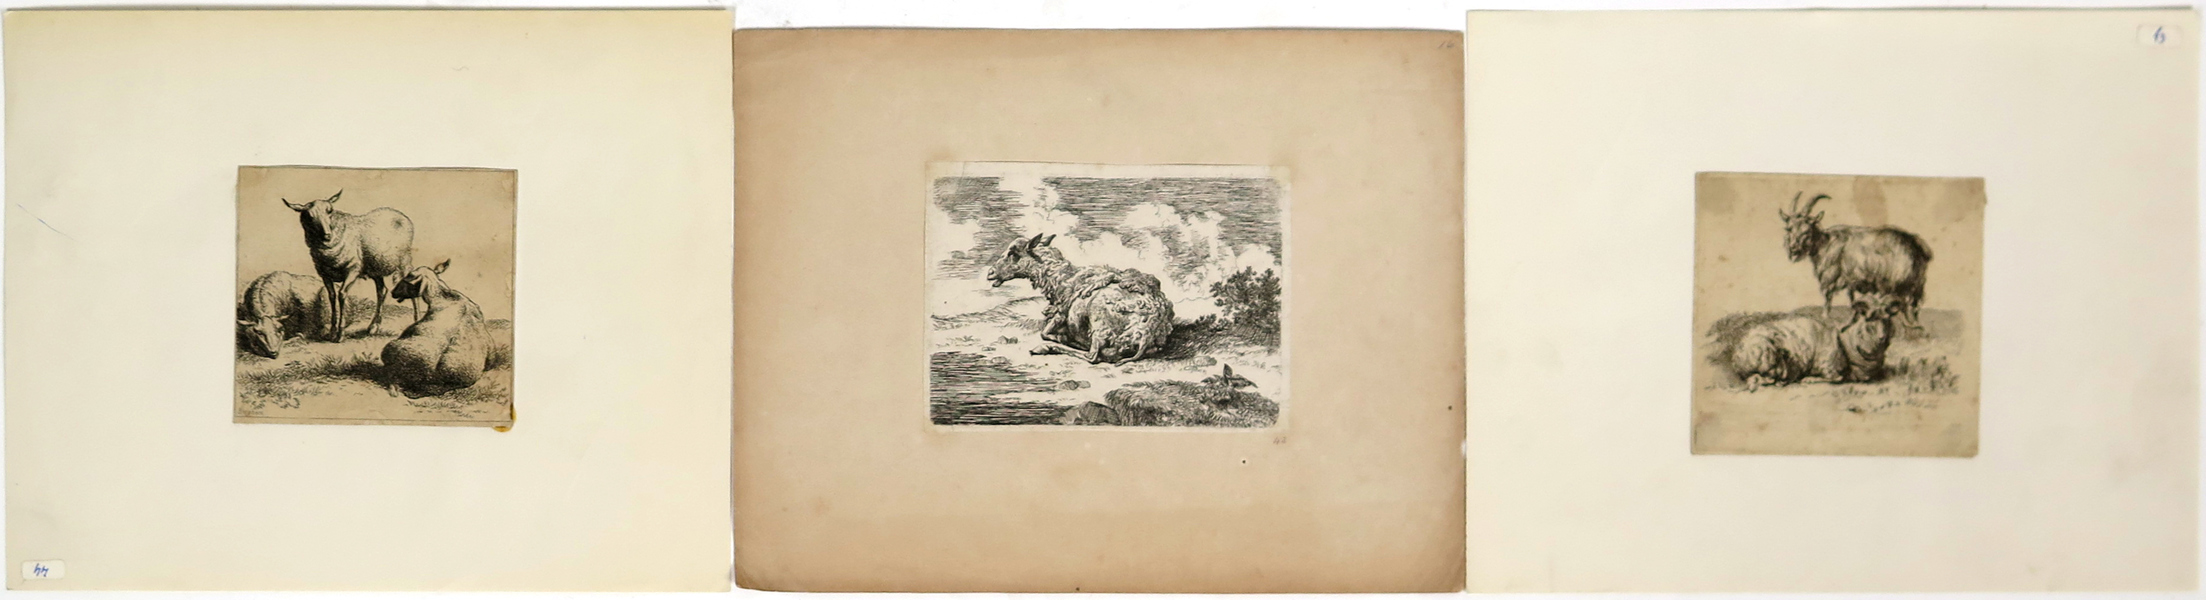 Berchem, Nicolaes, etsningar, 3 st, får och getter, största 10 x 14 cm, möjligen senare avdrag_31034a_lg.jpeg